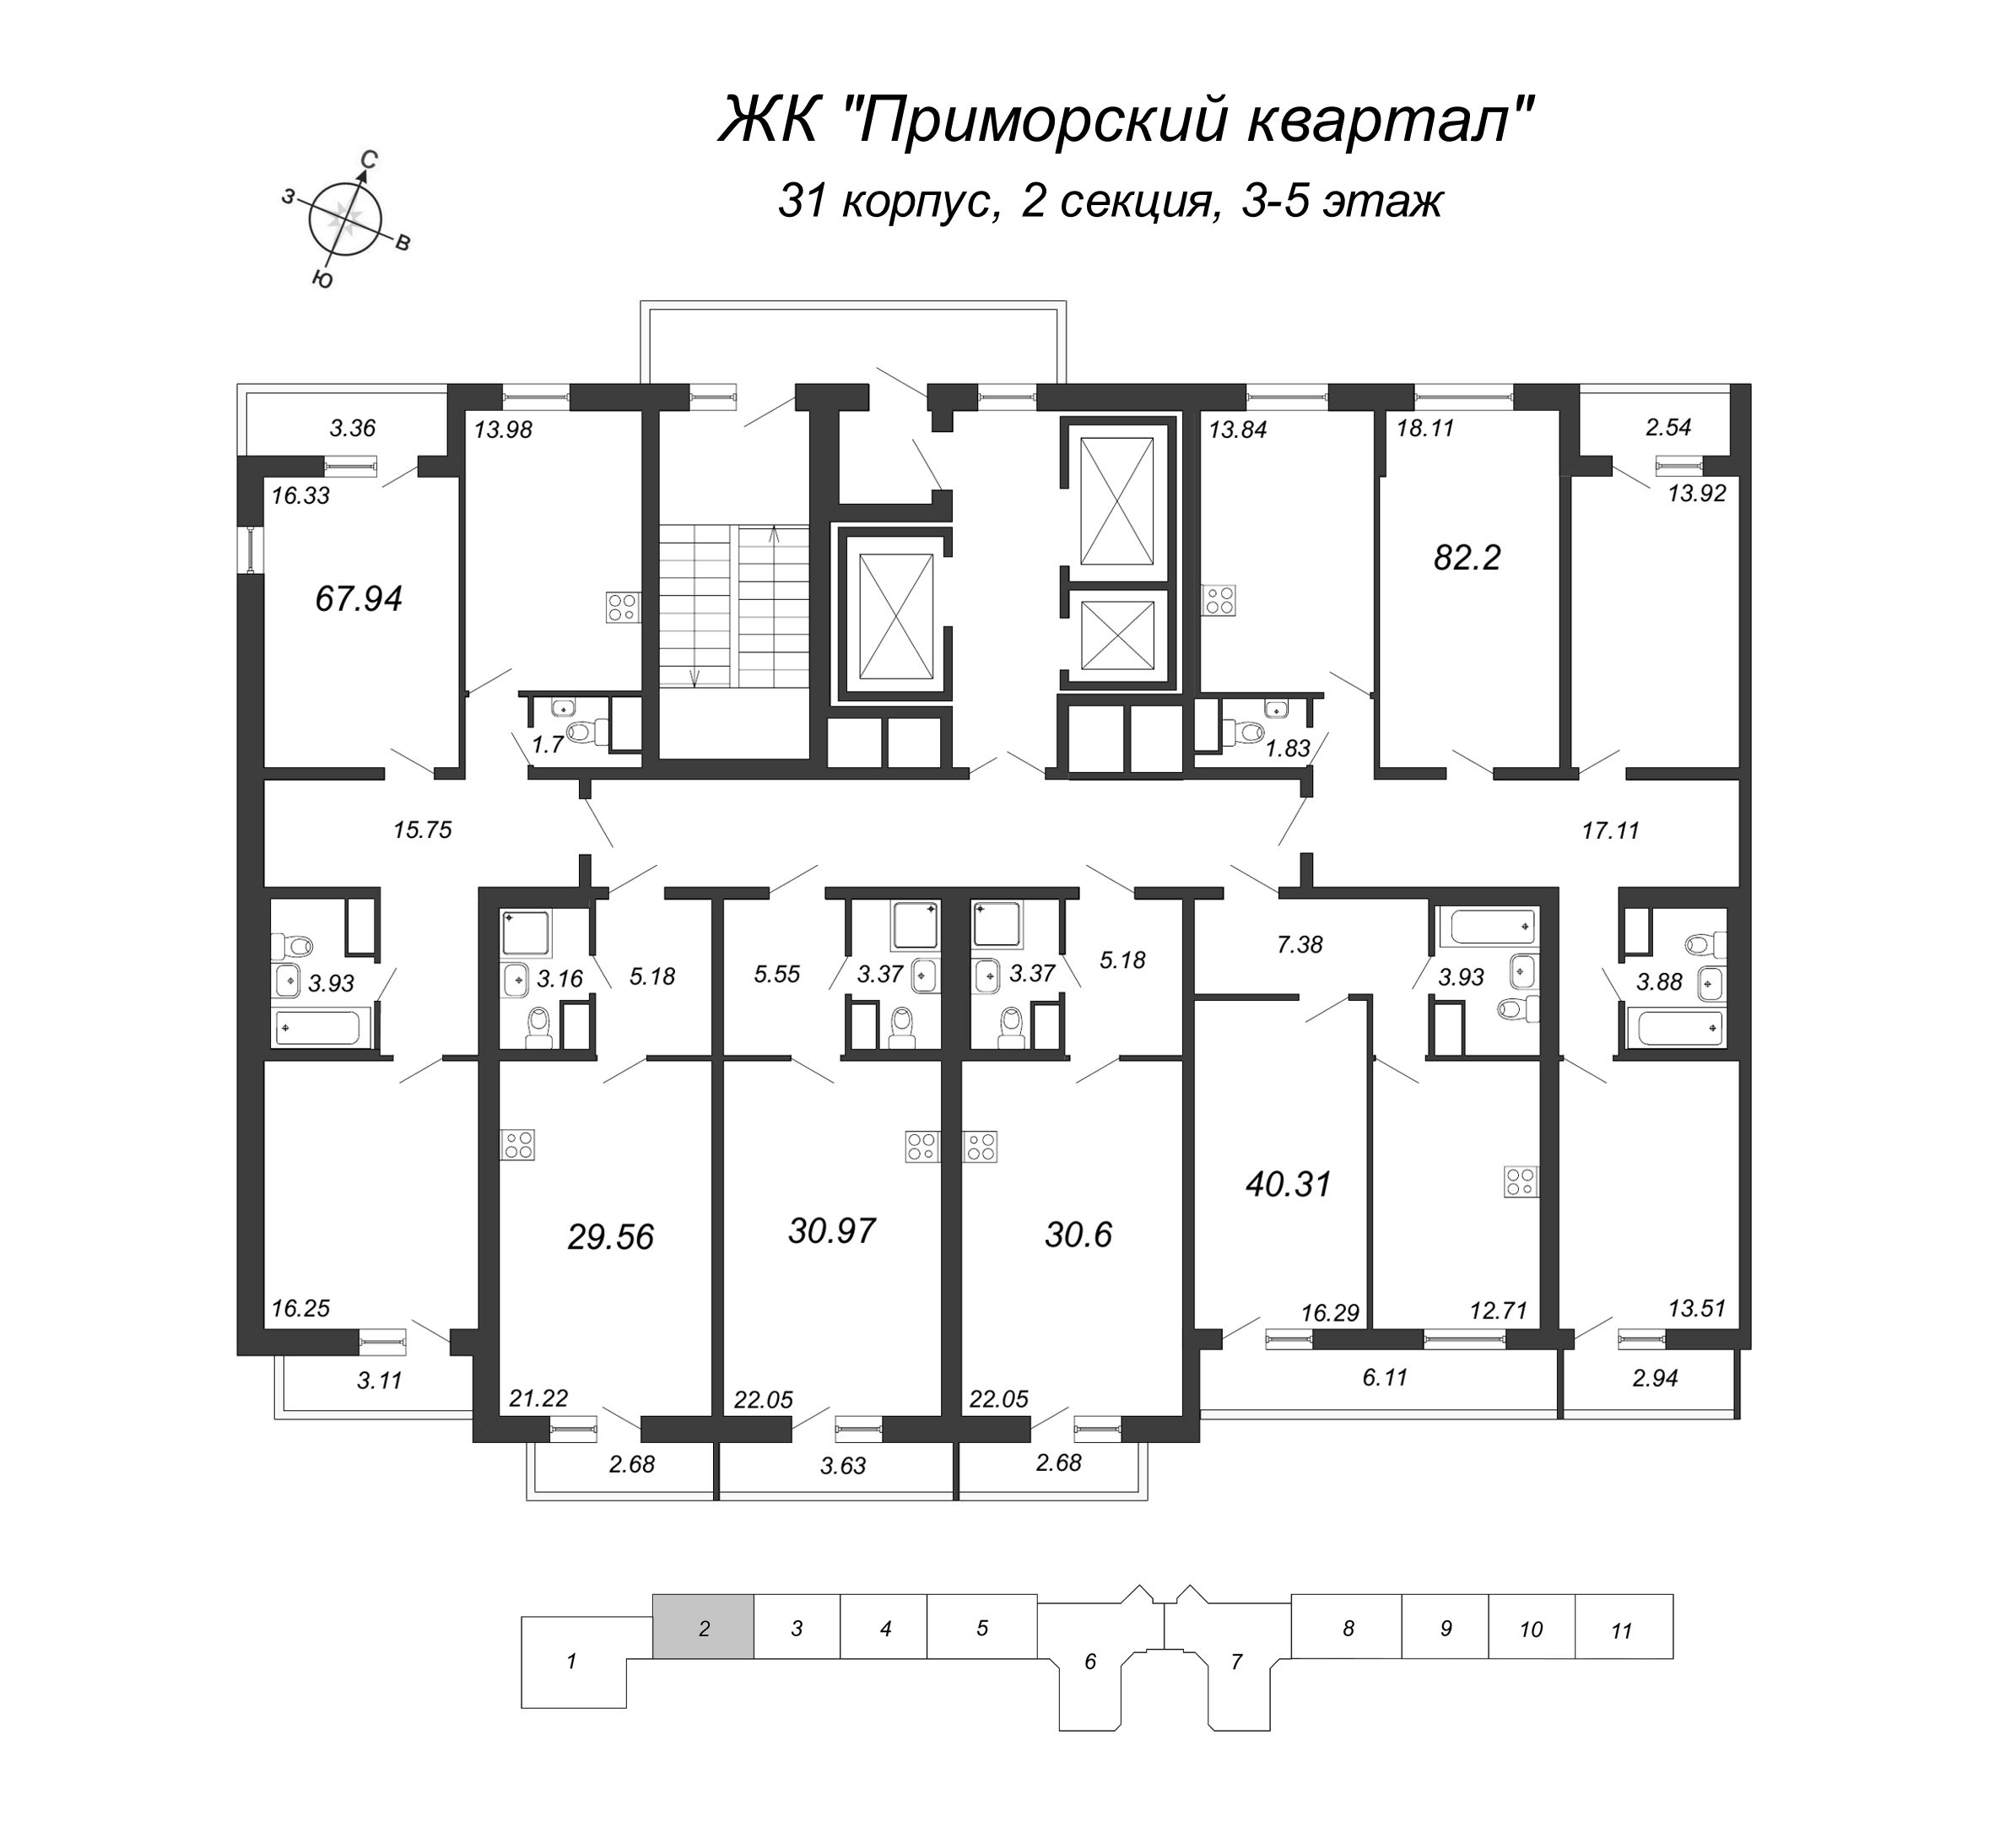 3-комнатная квартира, 82.2 м² в ЖК "Приморский квартал" - планировка этажа